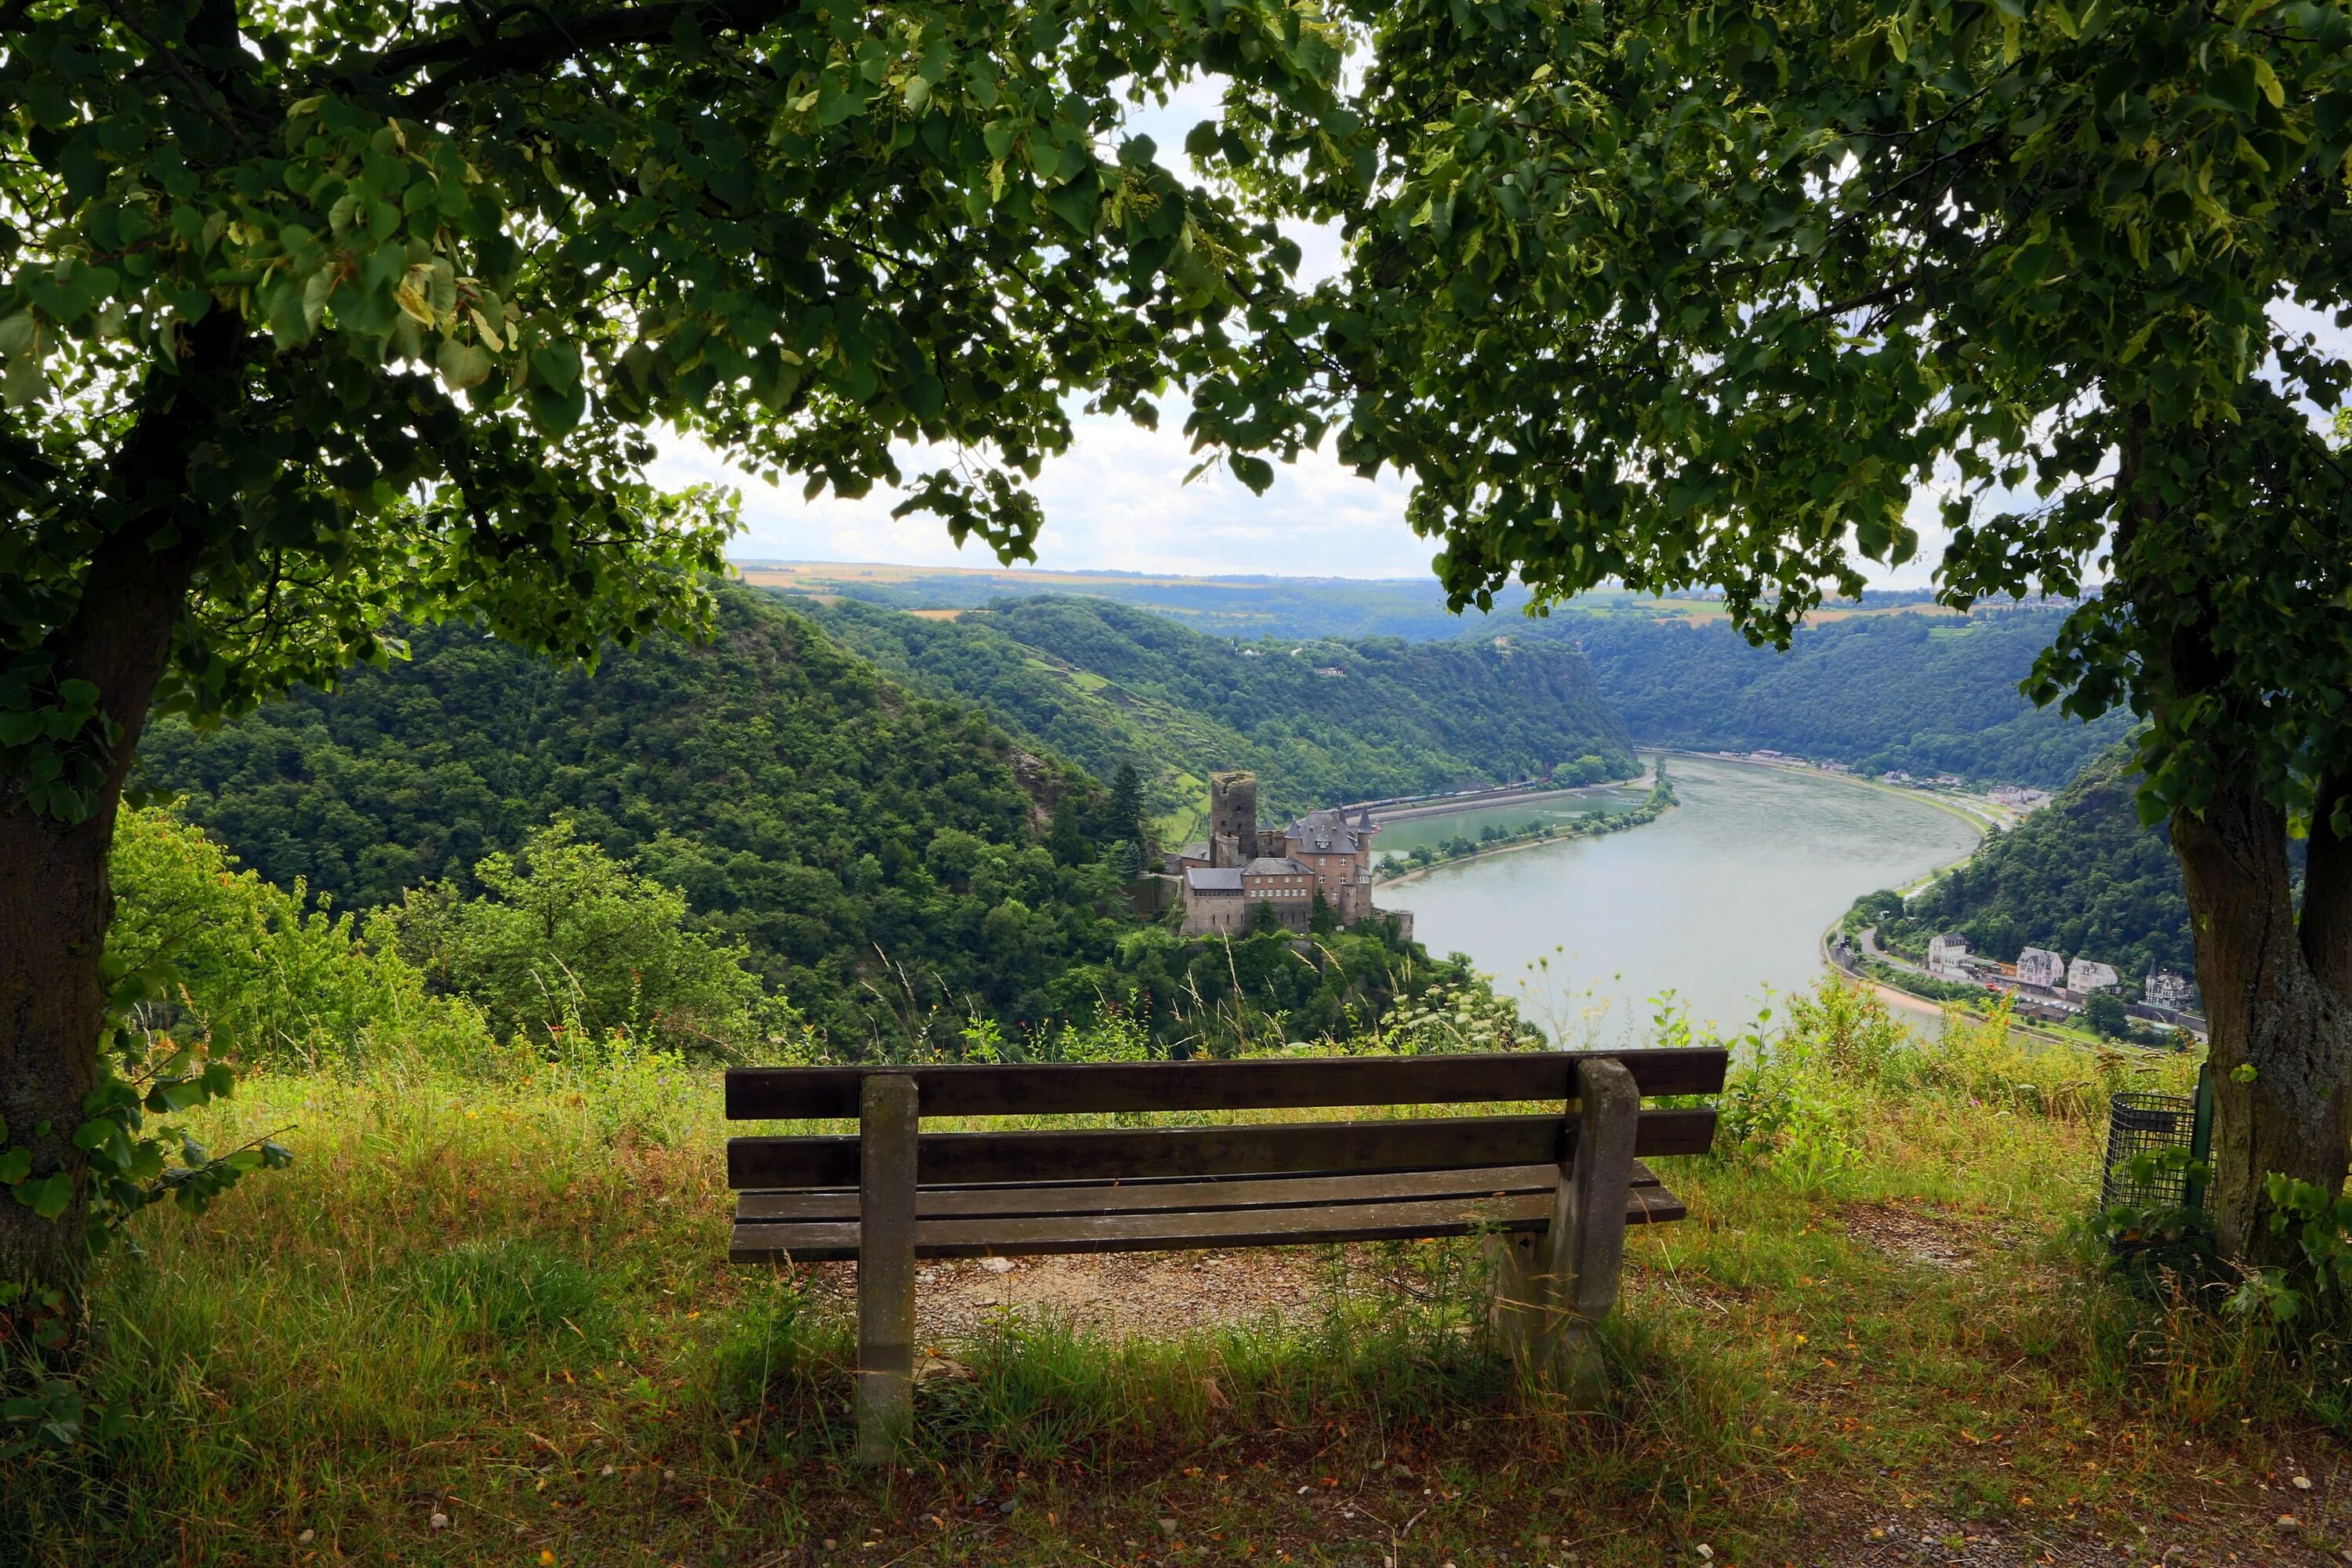 Окна холм. Пейзаж со скамейкой. Природа Германии. Лавочка у озера. Вид с холма на реку.